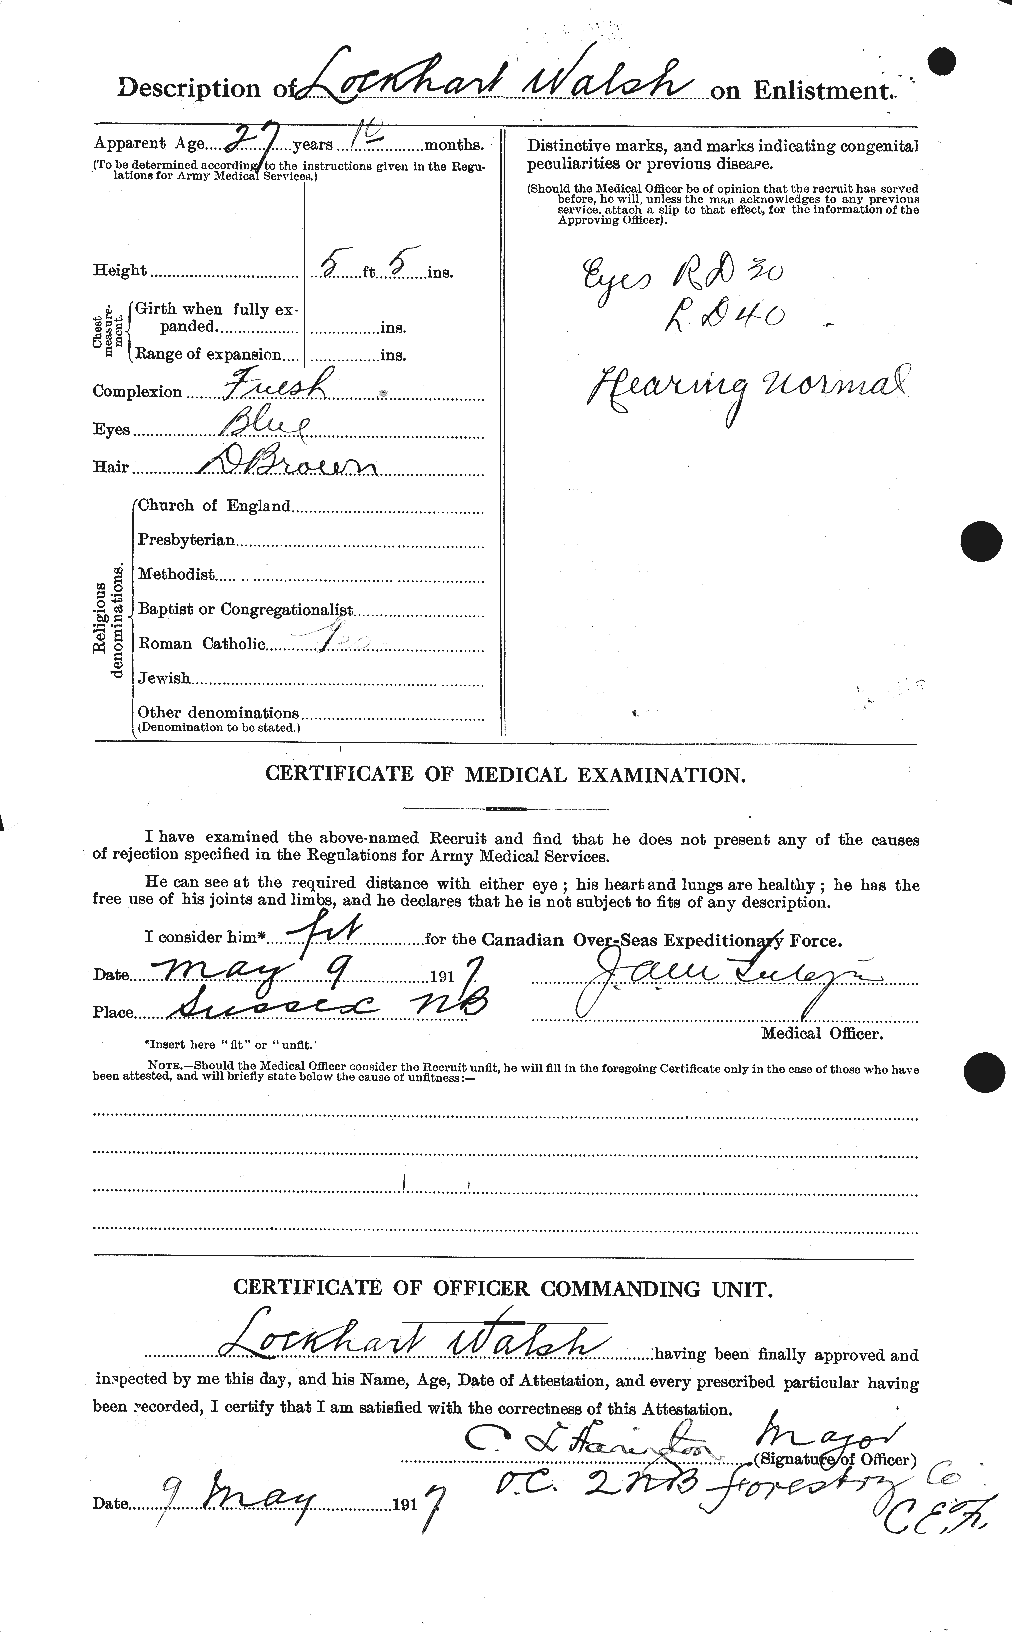 Dossiers du Personnel de la Première Guerre mondiale - CEC 653412b